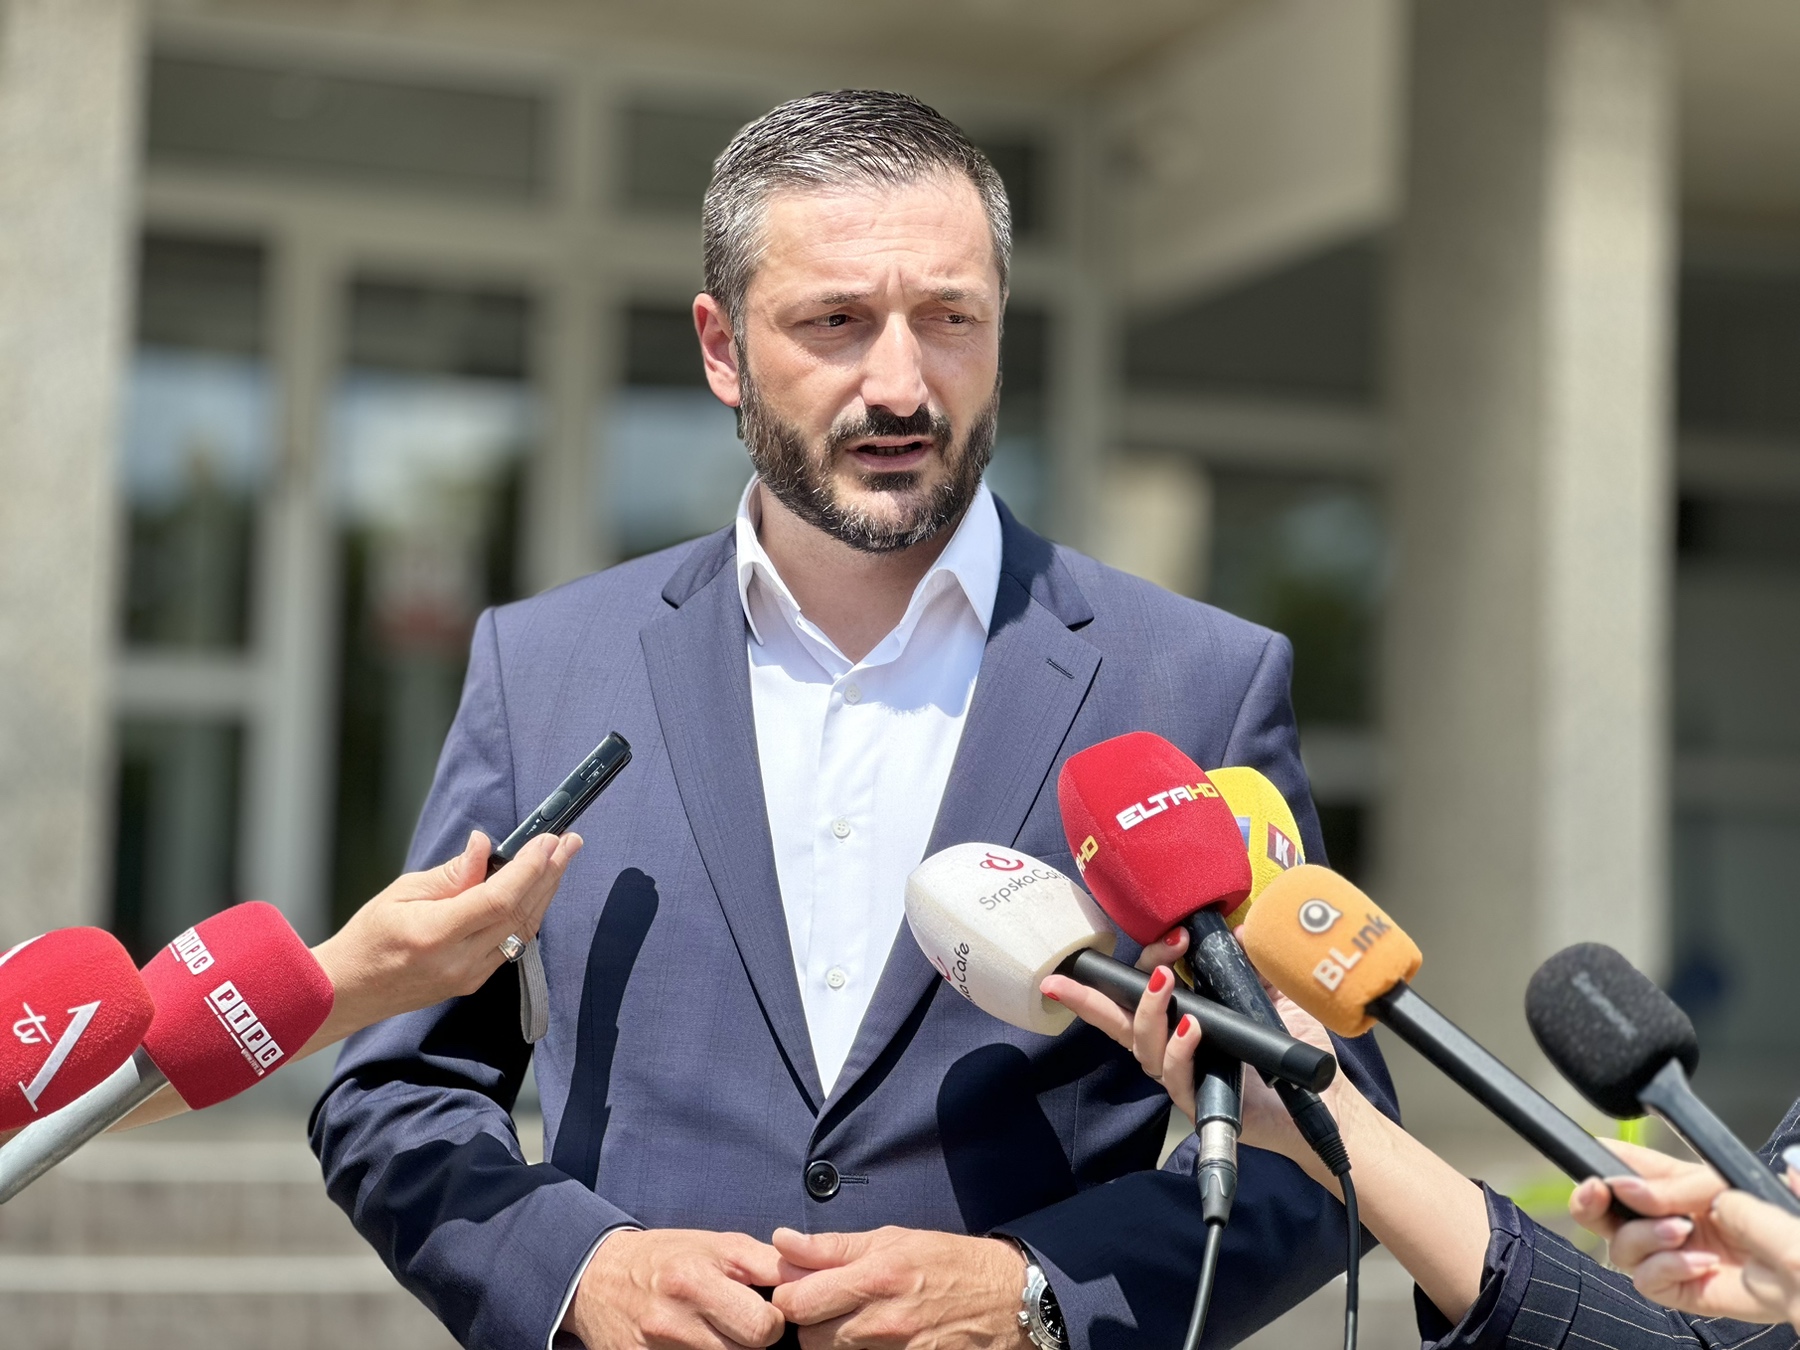 Tvrdi da je zloupotrebio službeni položaj: Ninković podnio krivičnu prijavu protiv Stanivukovića